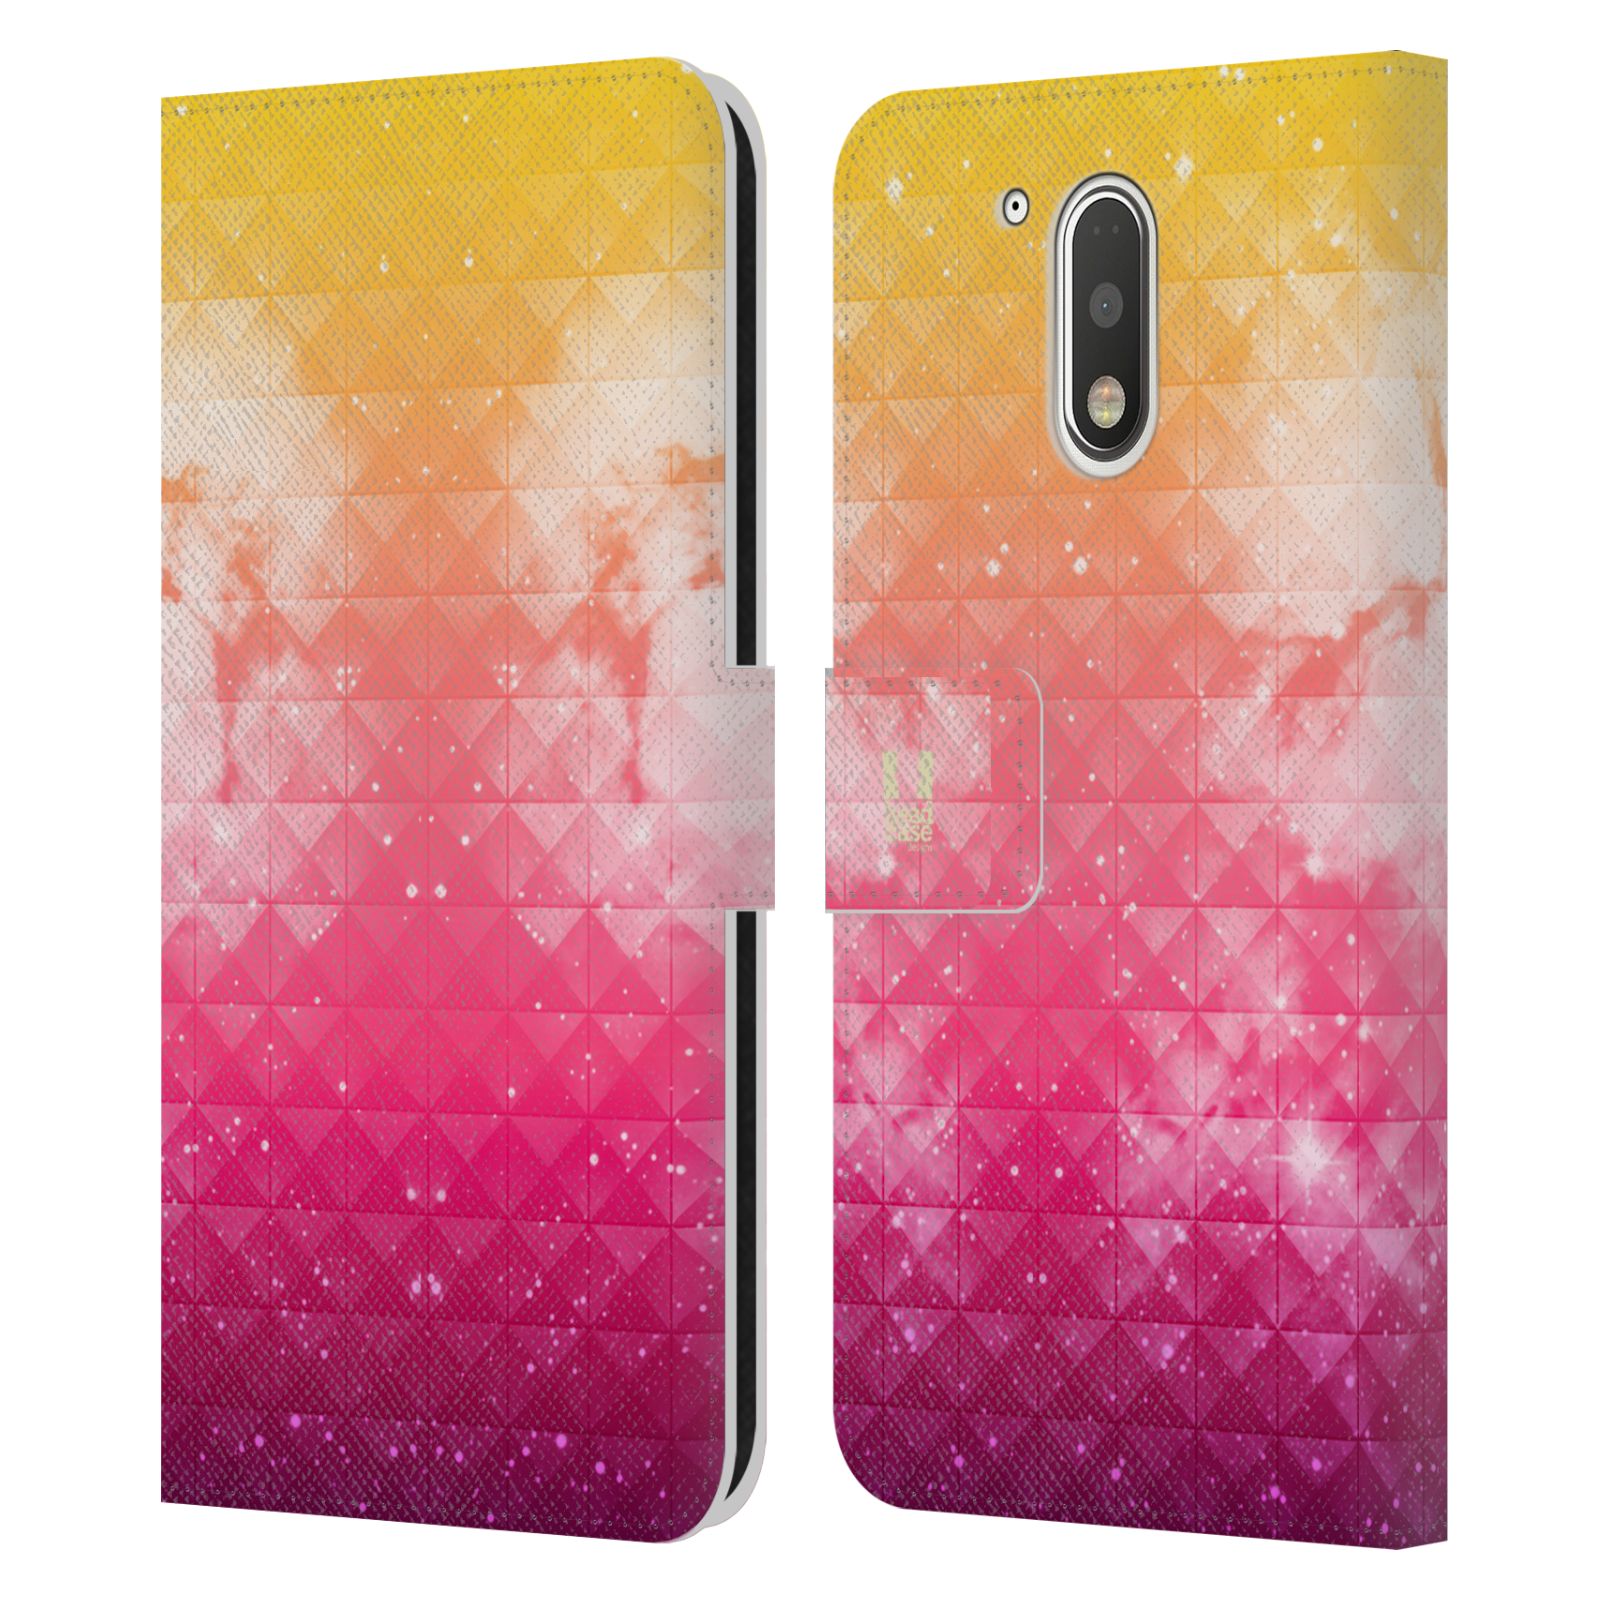 Pouzdro HEAD CASE na mobil Motorola Moto G41 barevná vesmírná mlhovina oranžová a růžová